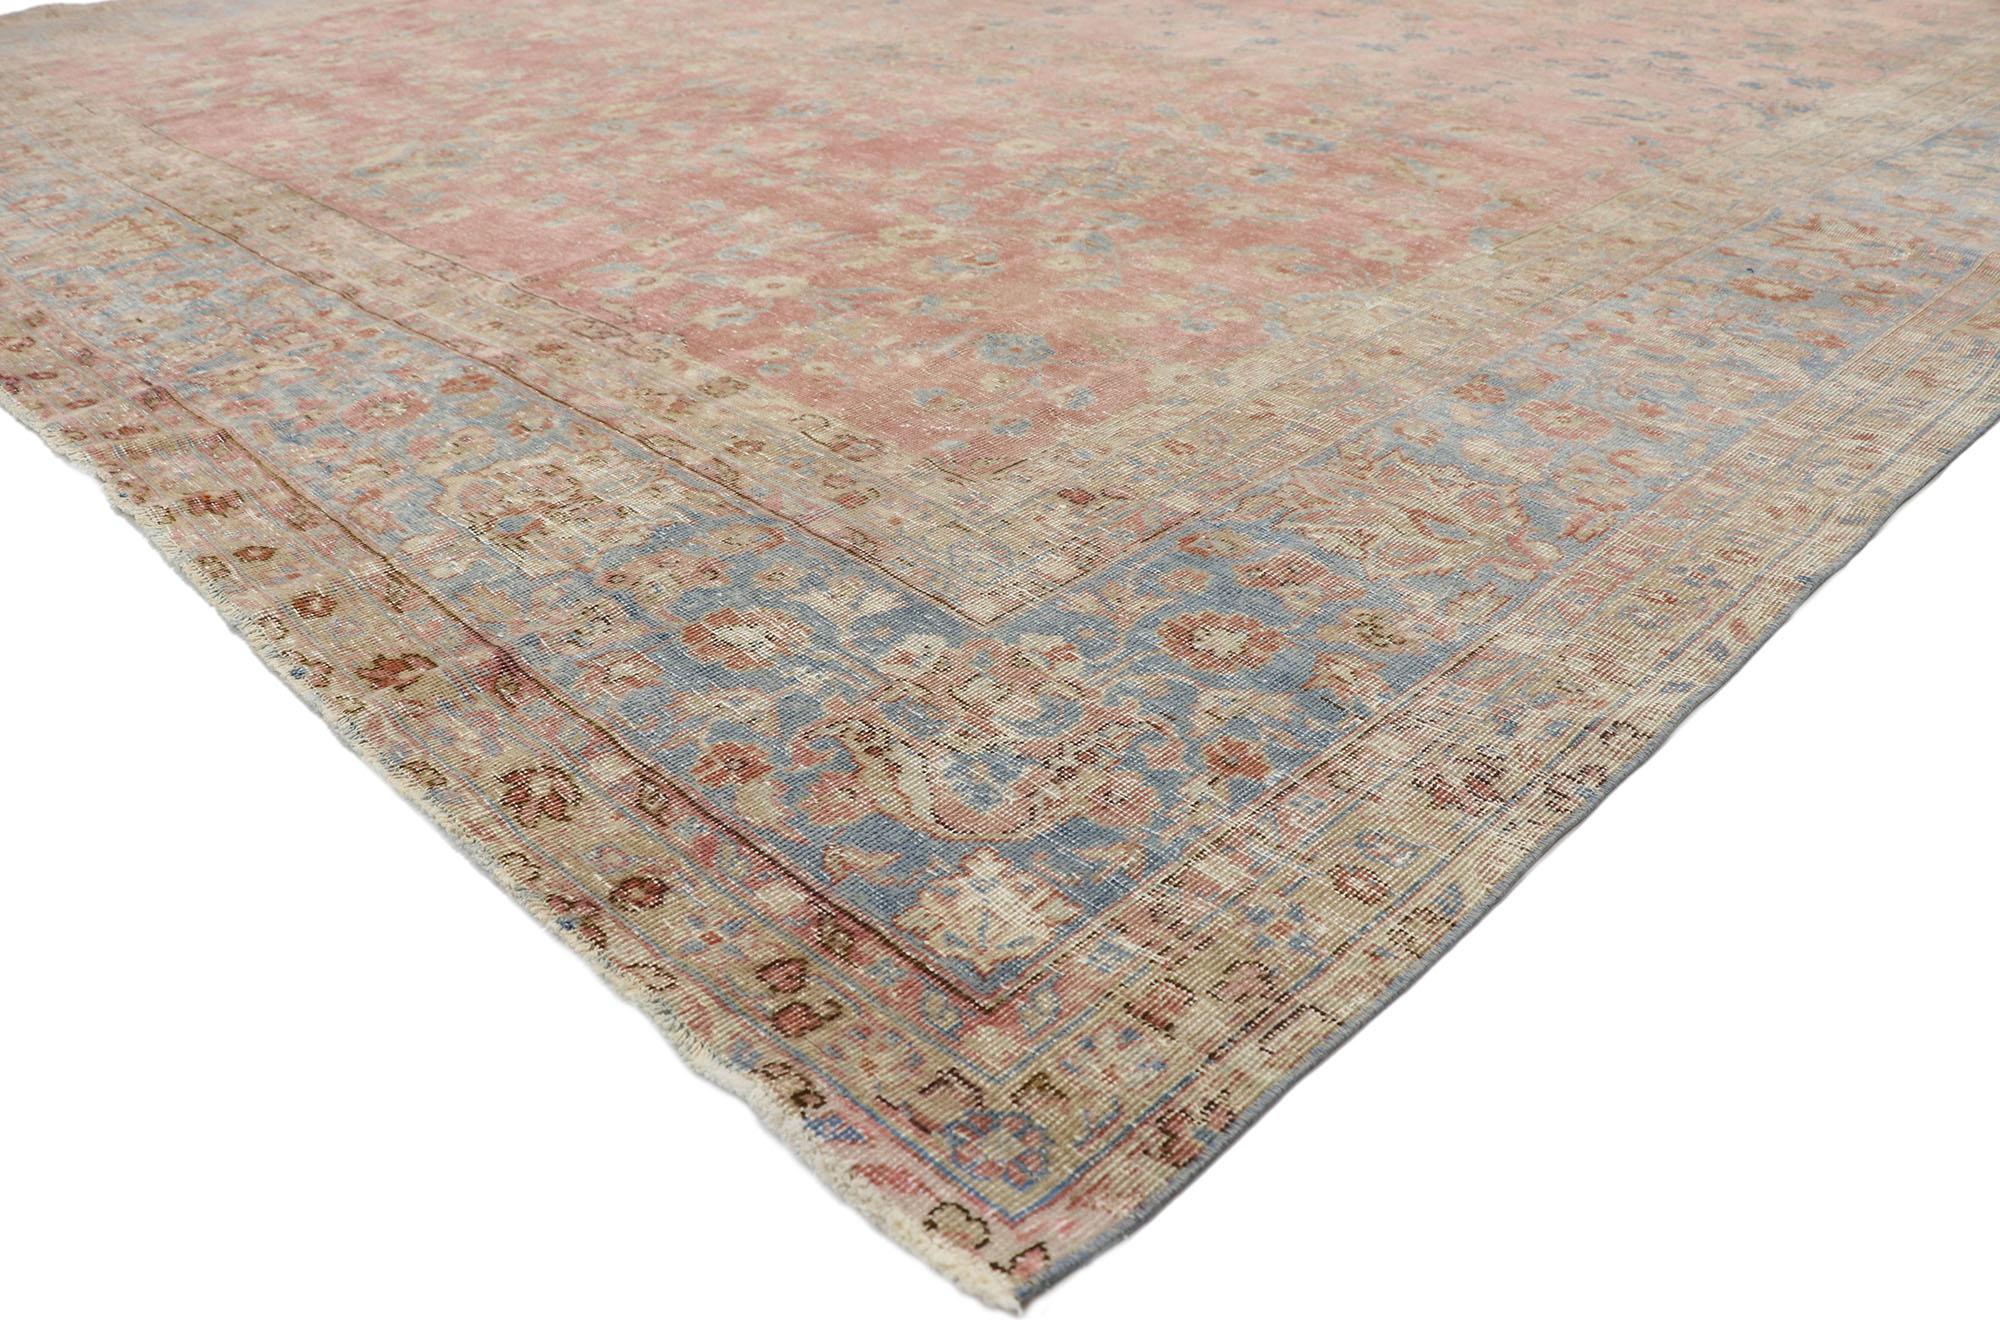 76756 Tapis indien vieilli, 11'05 x 16'01.
Le style Regencycore rencontre la sensibilité rustique dans ce tapis indien antique en laine nouée à la main. Les détails hautement décoratifs et les couleurs pastel tissés dans cette pièce s'associent pour